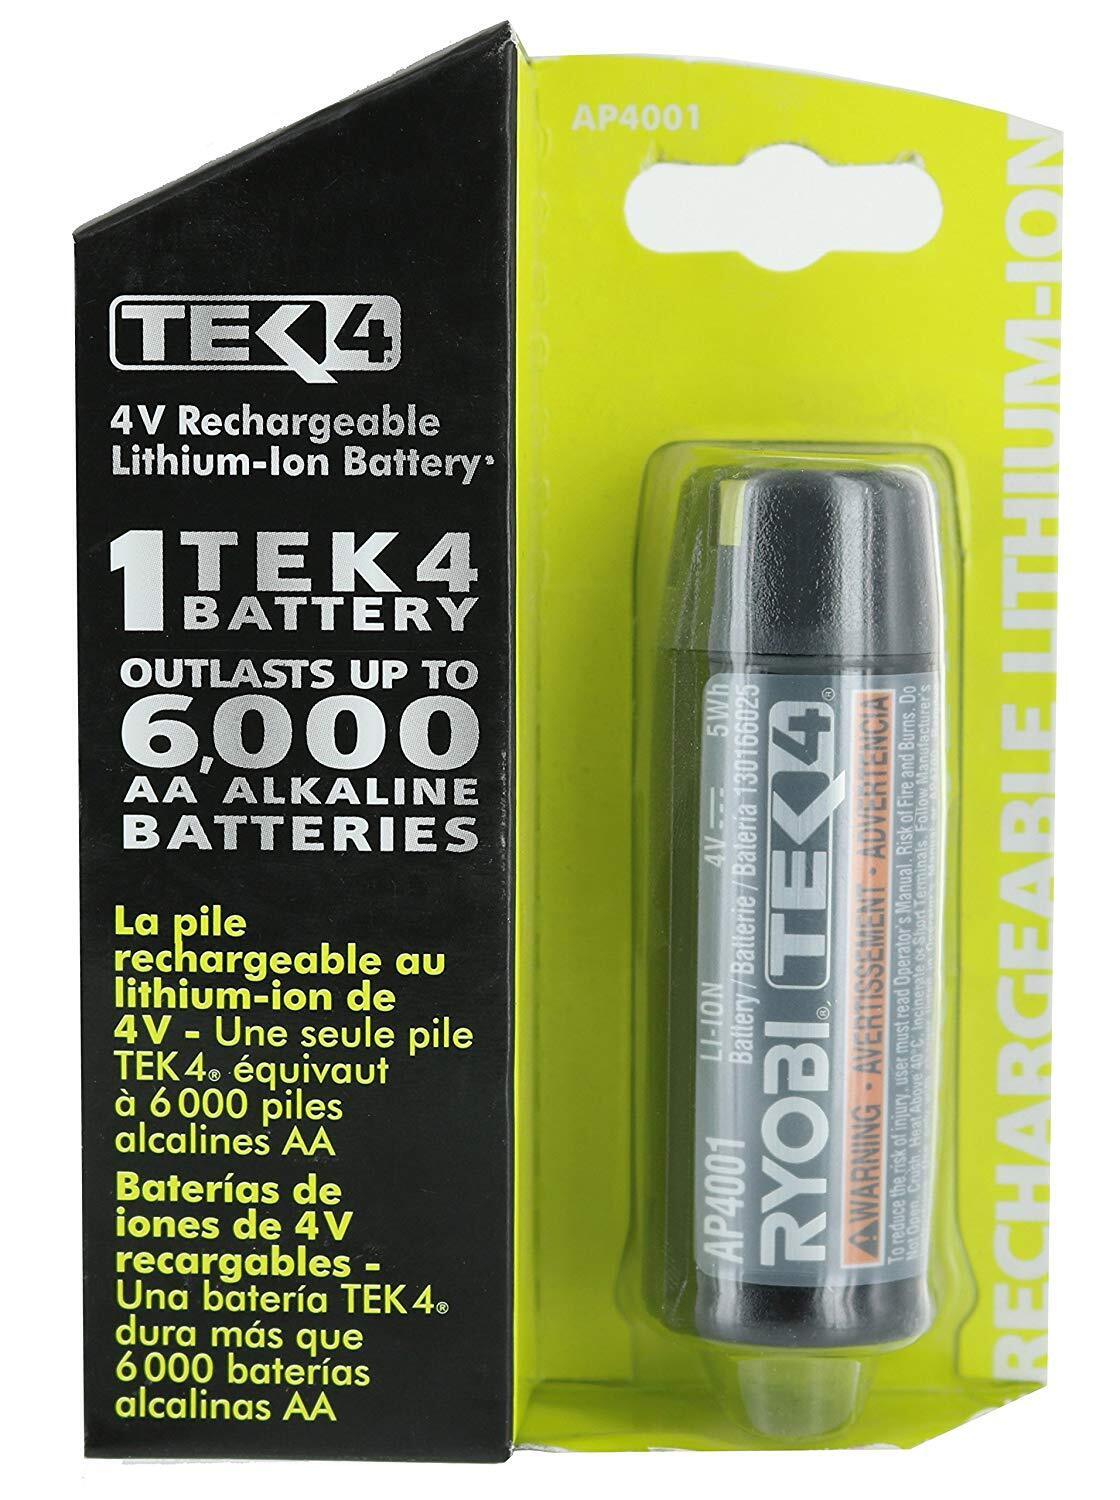 Ryobi Genuine OEM Replacement Battery, AP4001